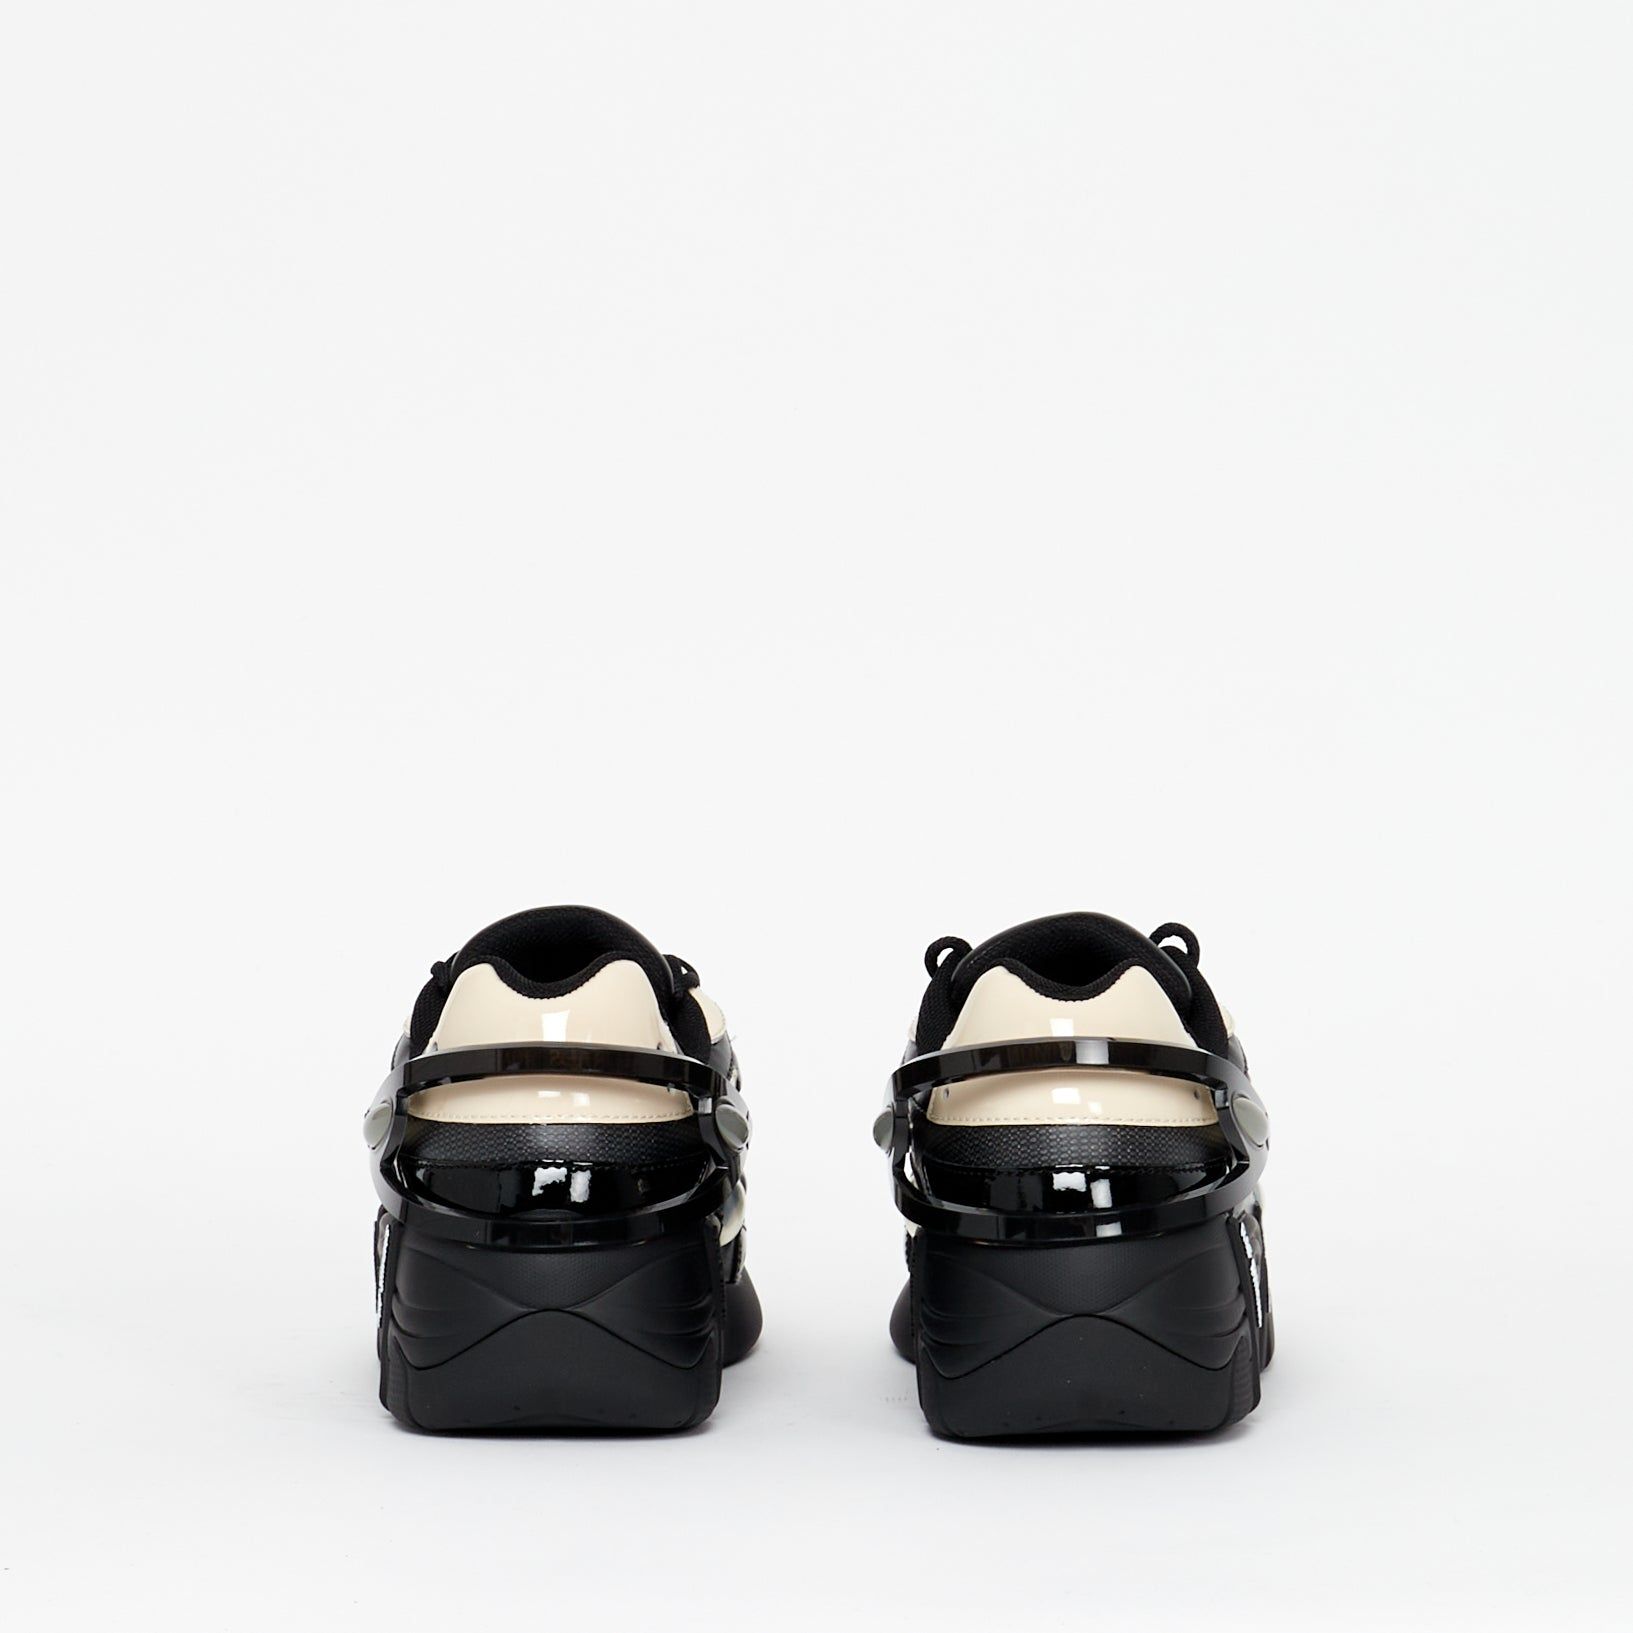 Sneaker Cylon 21 Cream Black - Lesthete raf simons